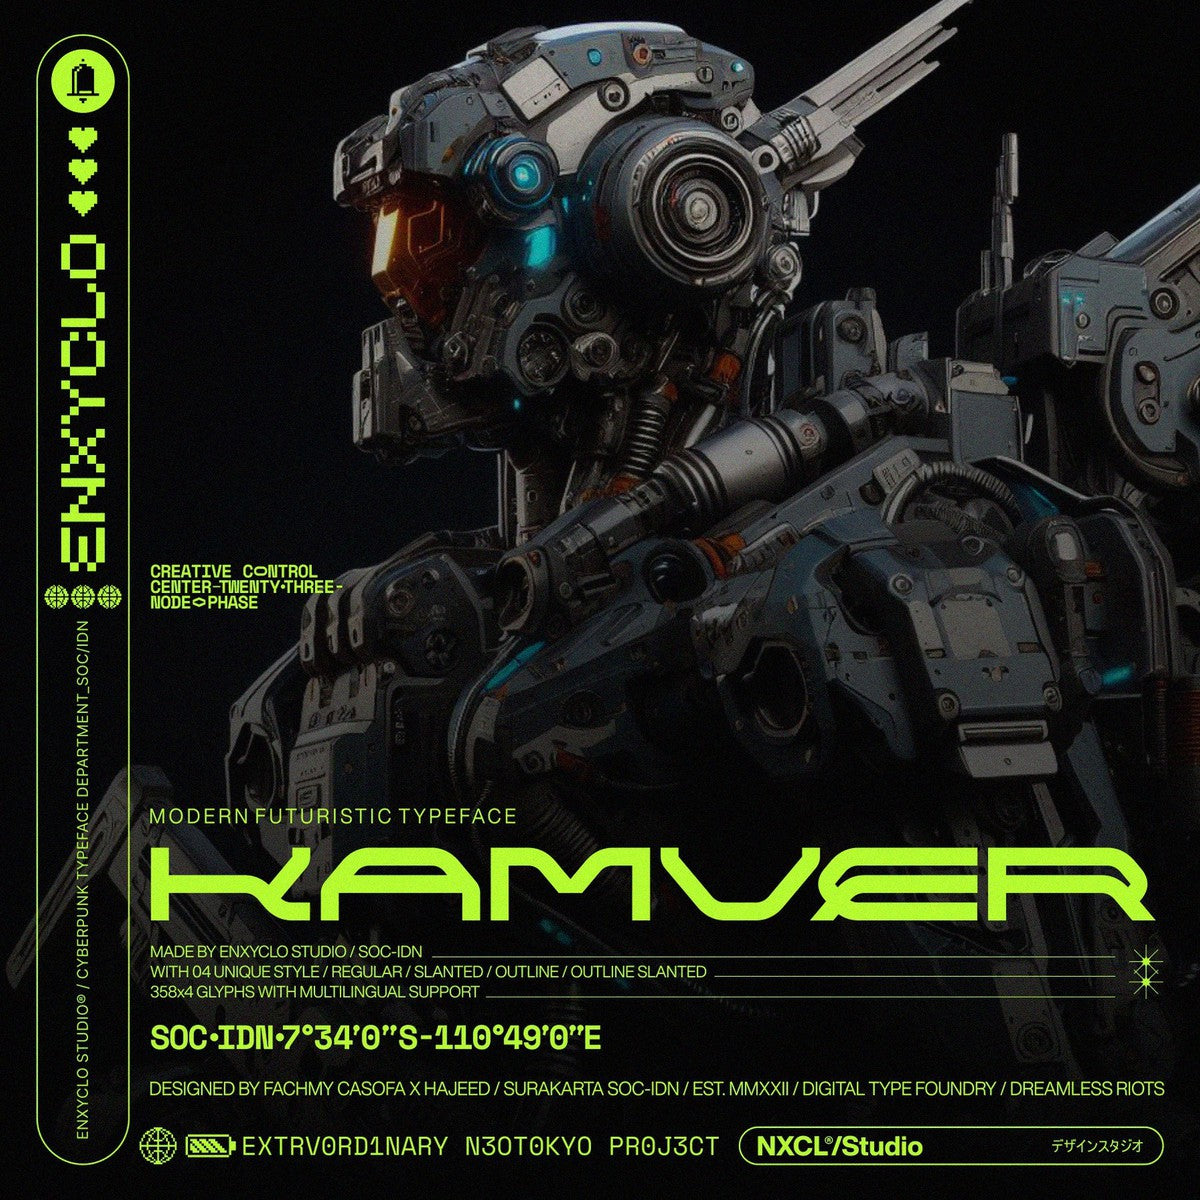 NCL Kamver - Futuristic Cyberpunk Space Techno Font